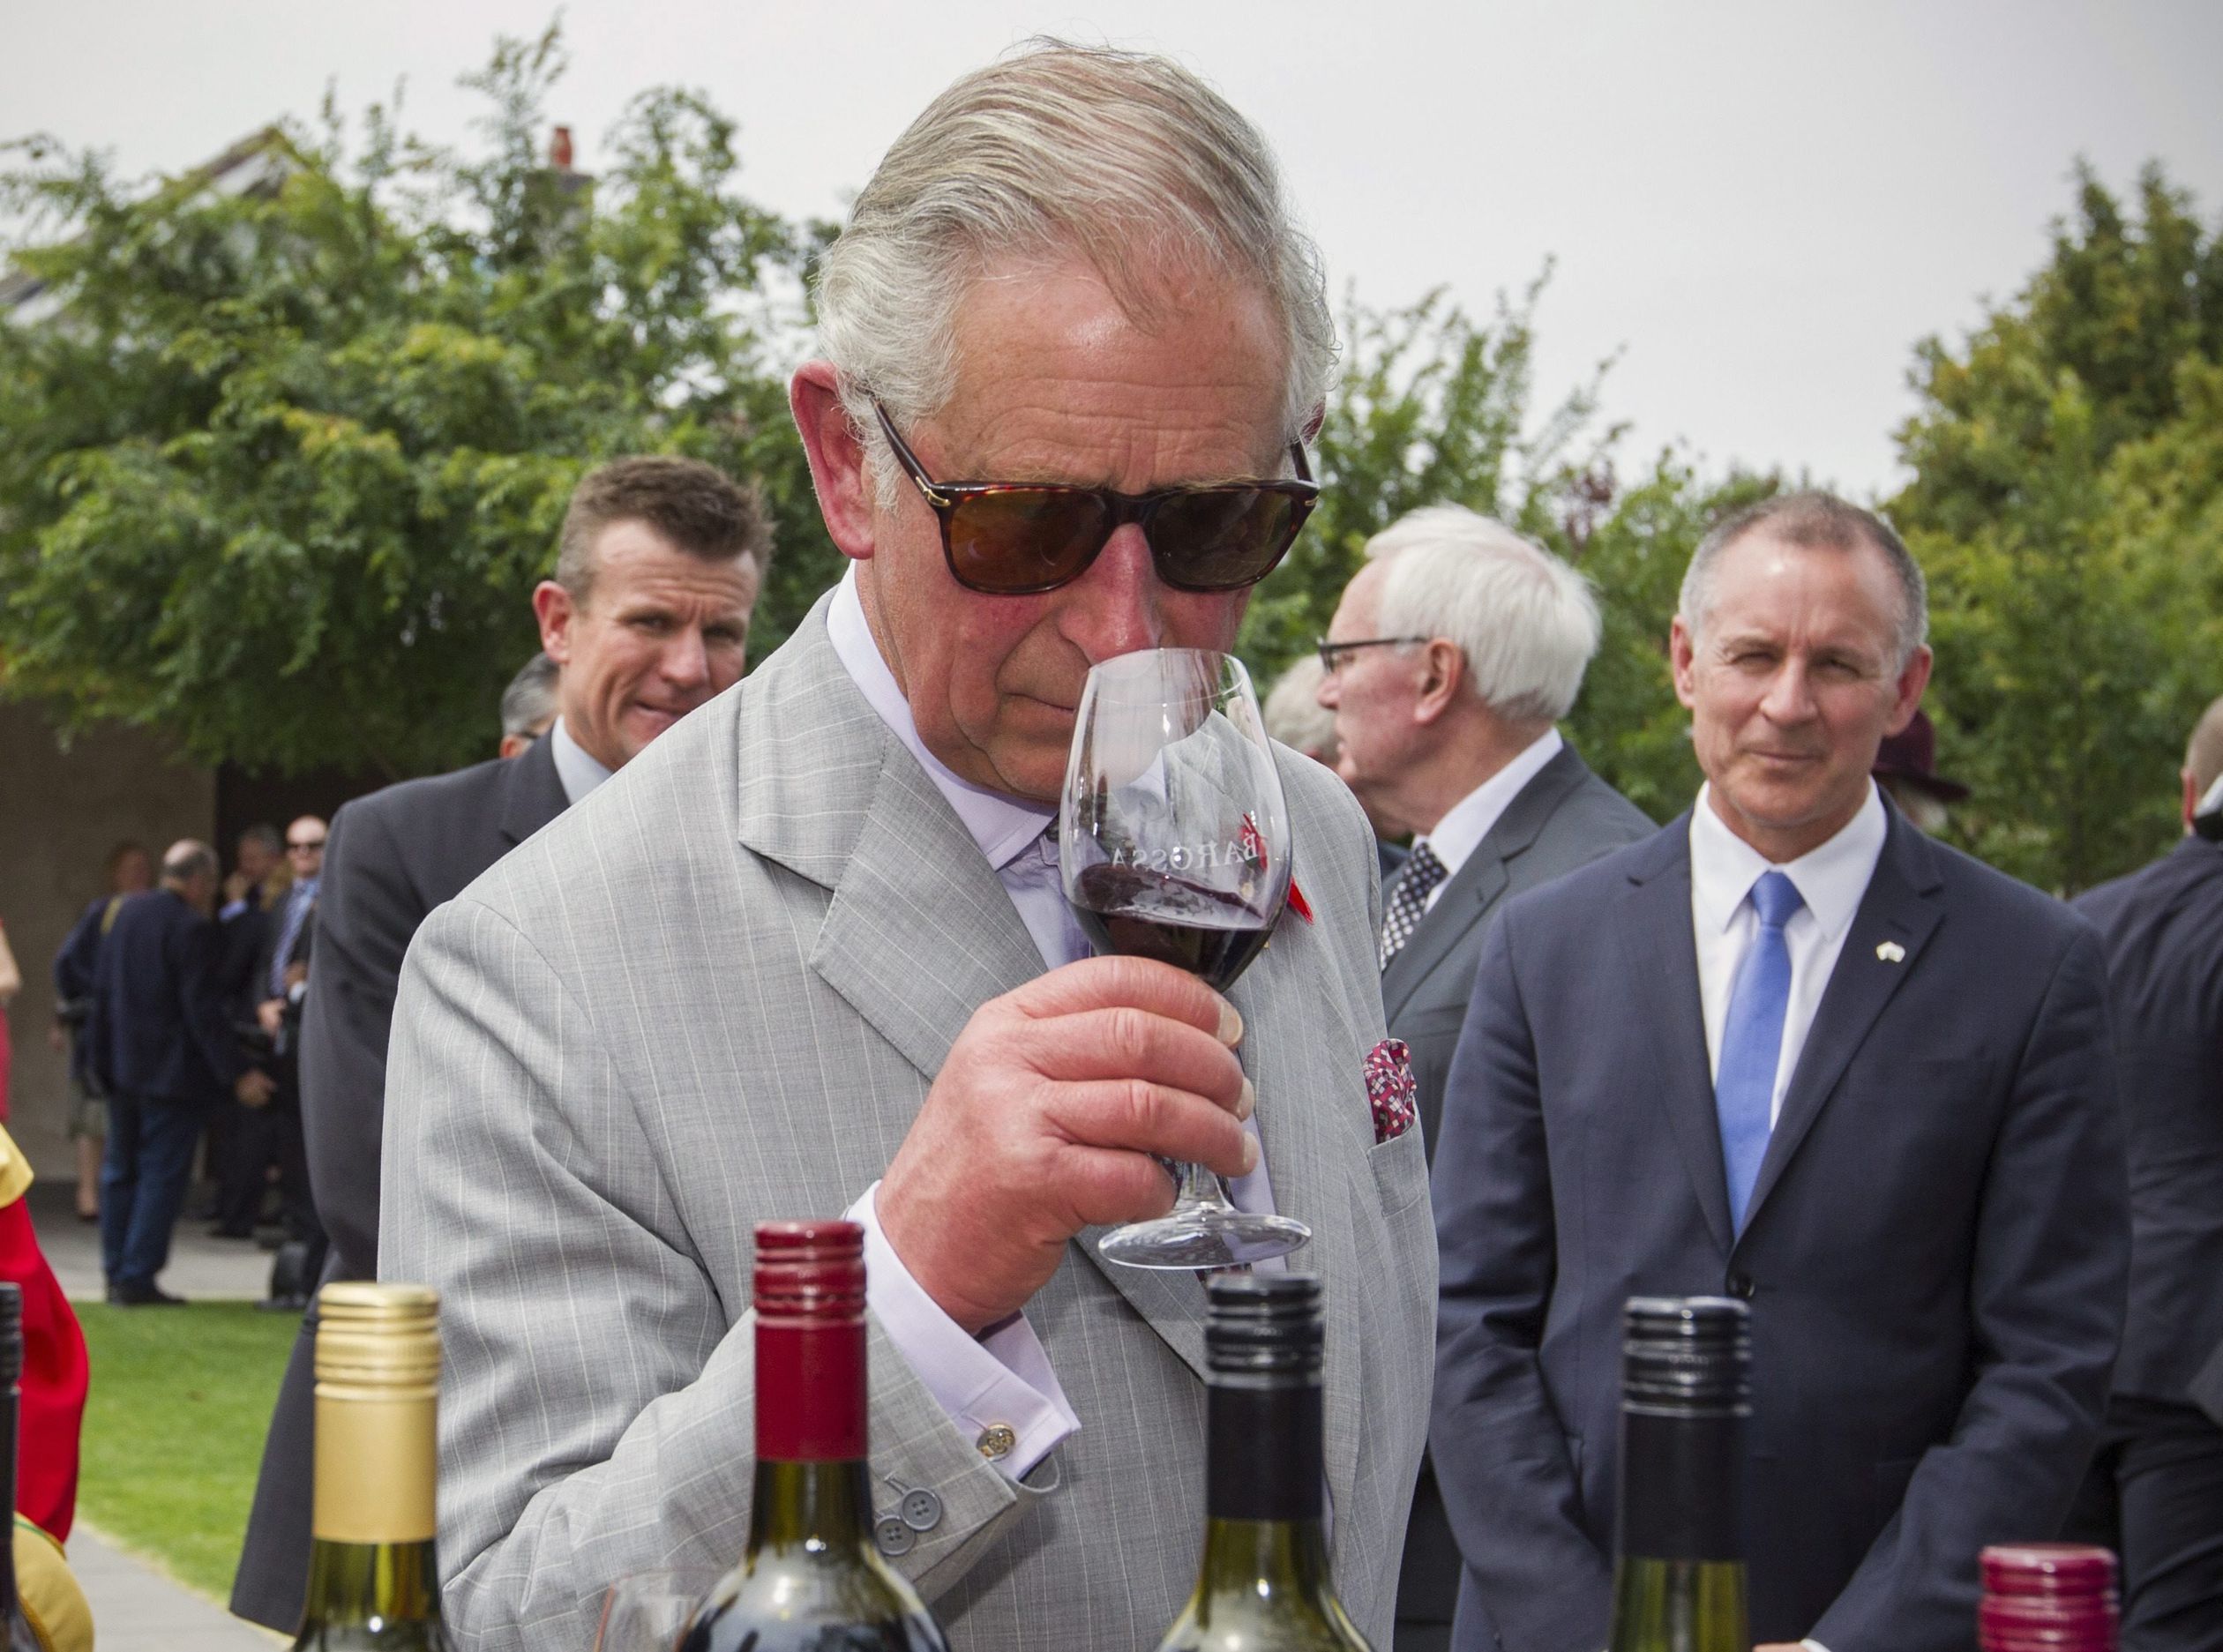 2015: prins Charles proeft een wijn in Tanunda, in het Barossa Valley gebied van Zuid-Australië.